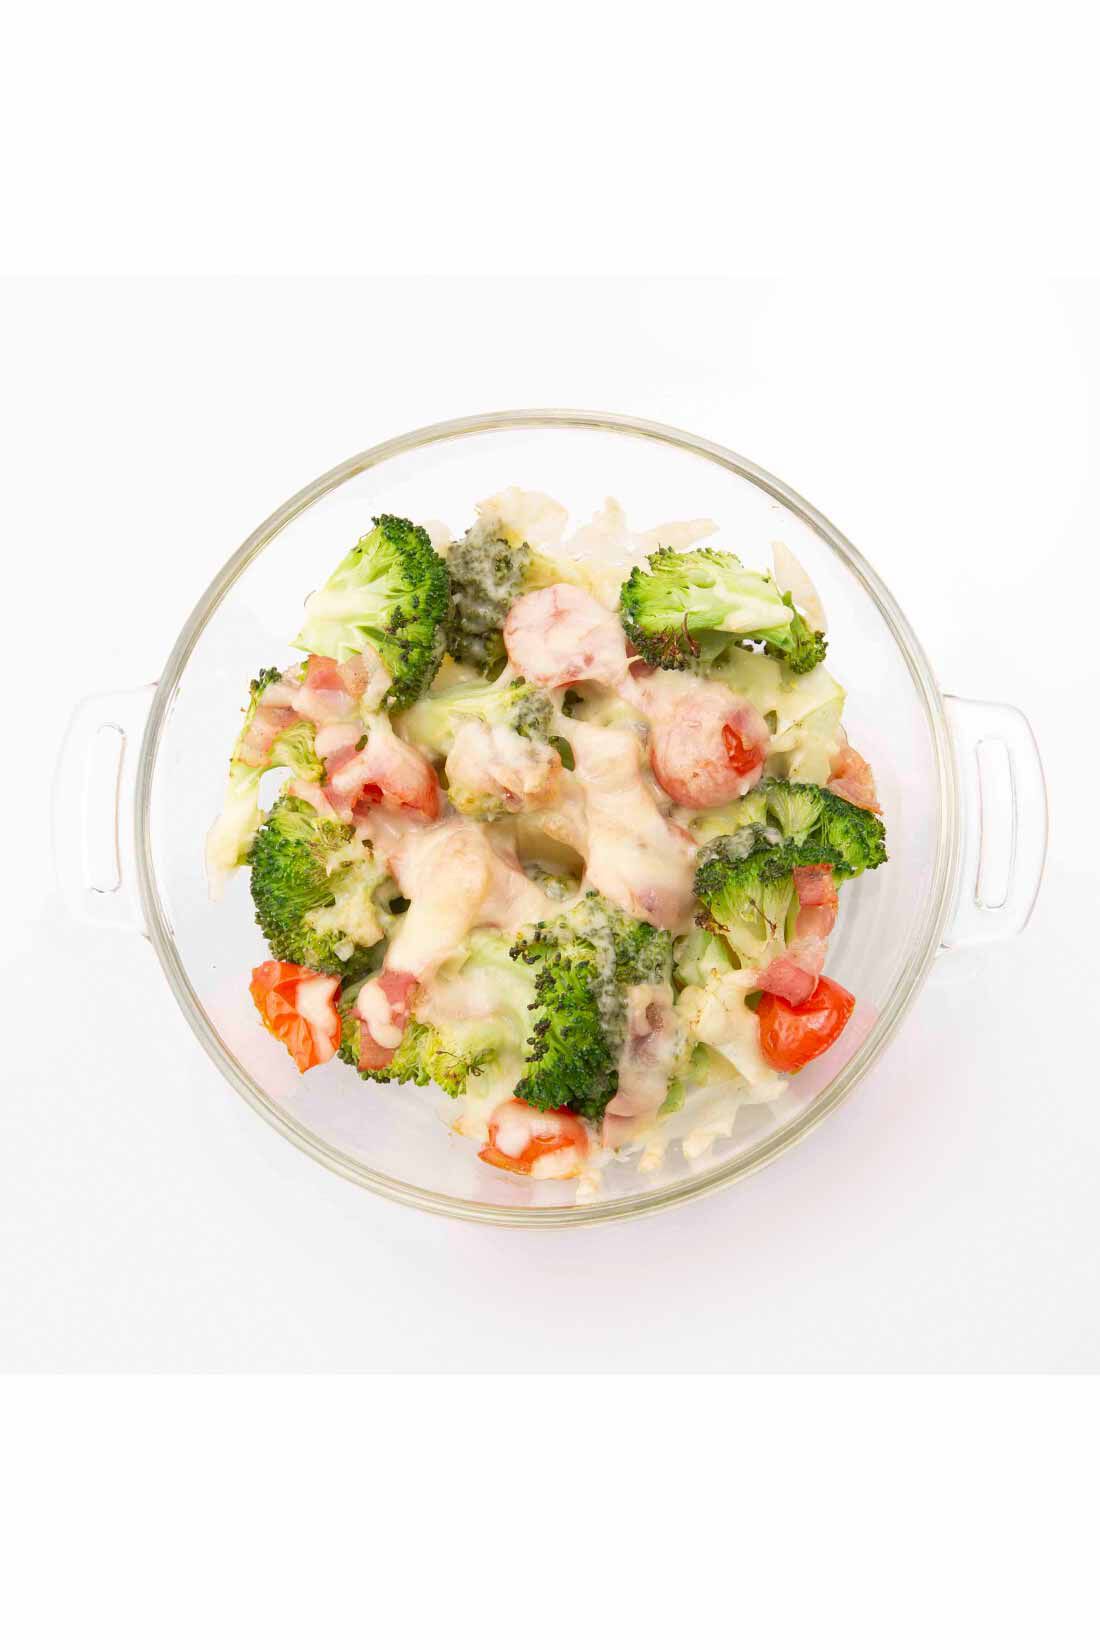 ミニツク| チンするだけおまかせ調理 野菜がたっぷり摂れる耐熱ガラス鍋〈ピンク 1.5L〉